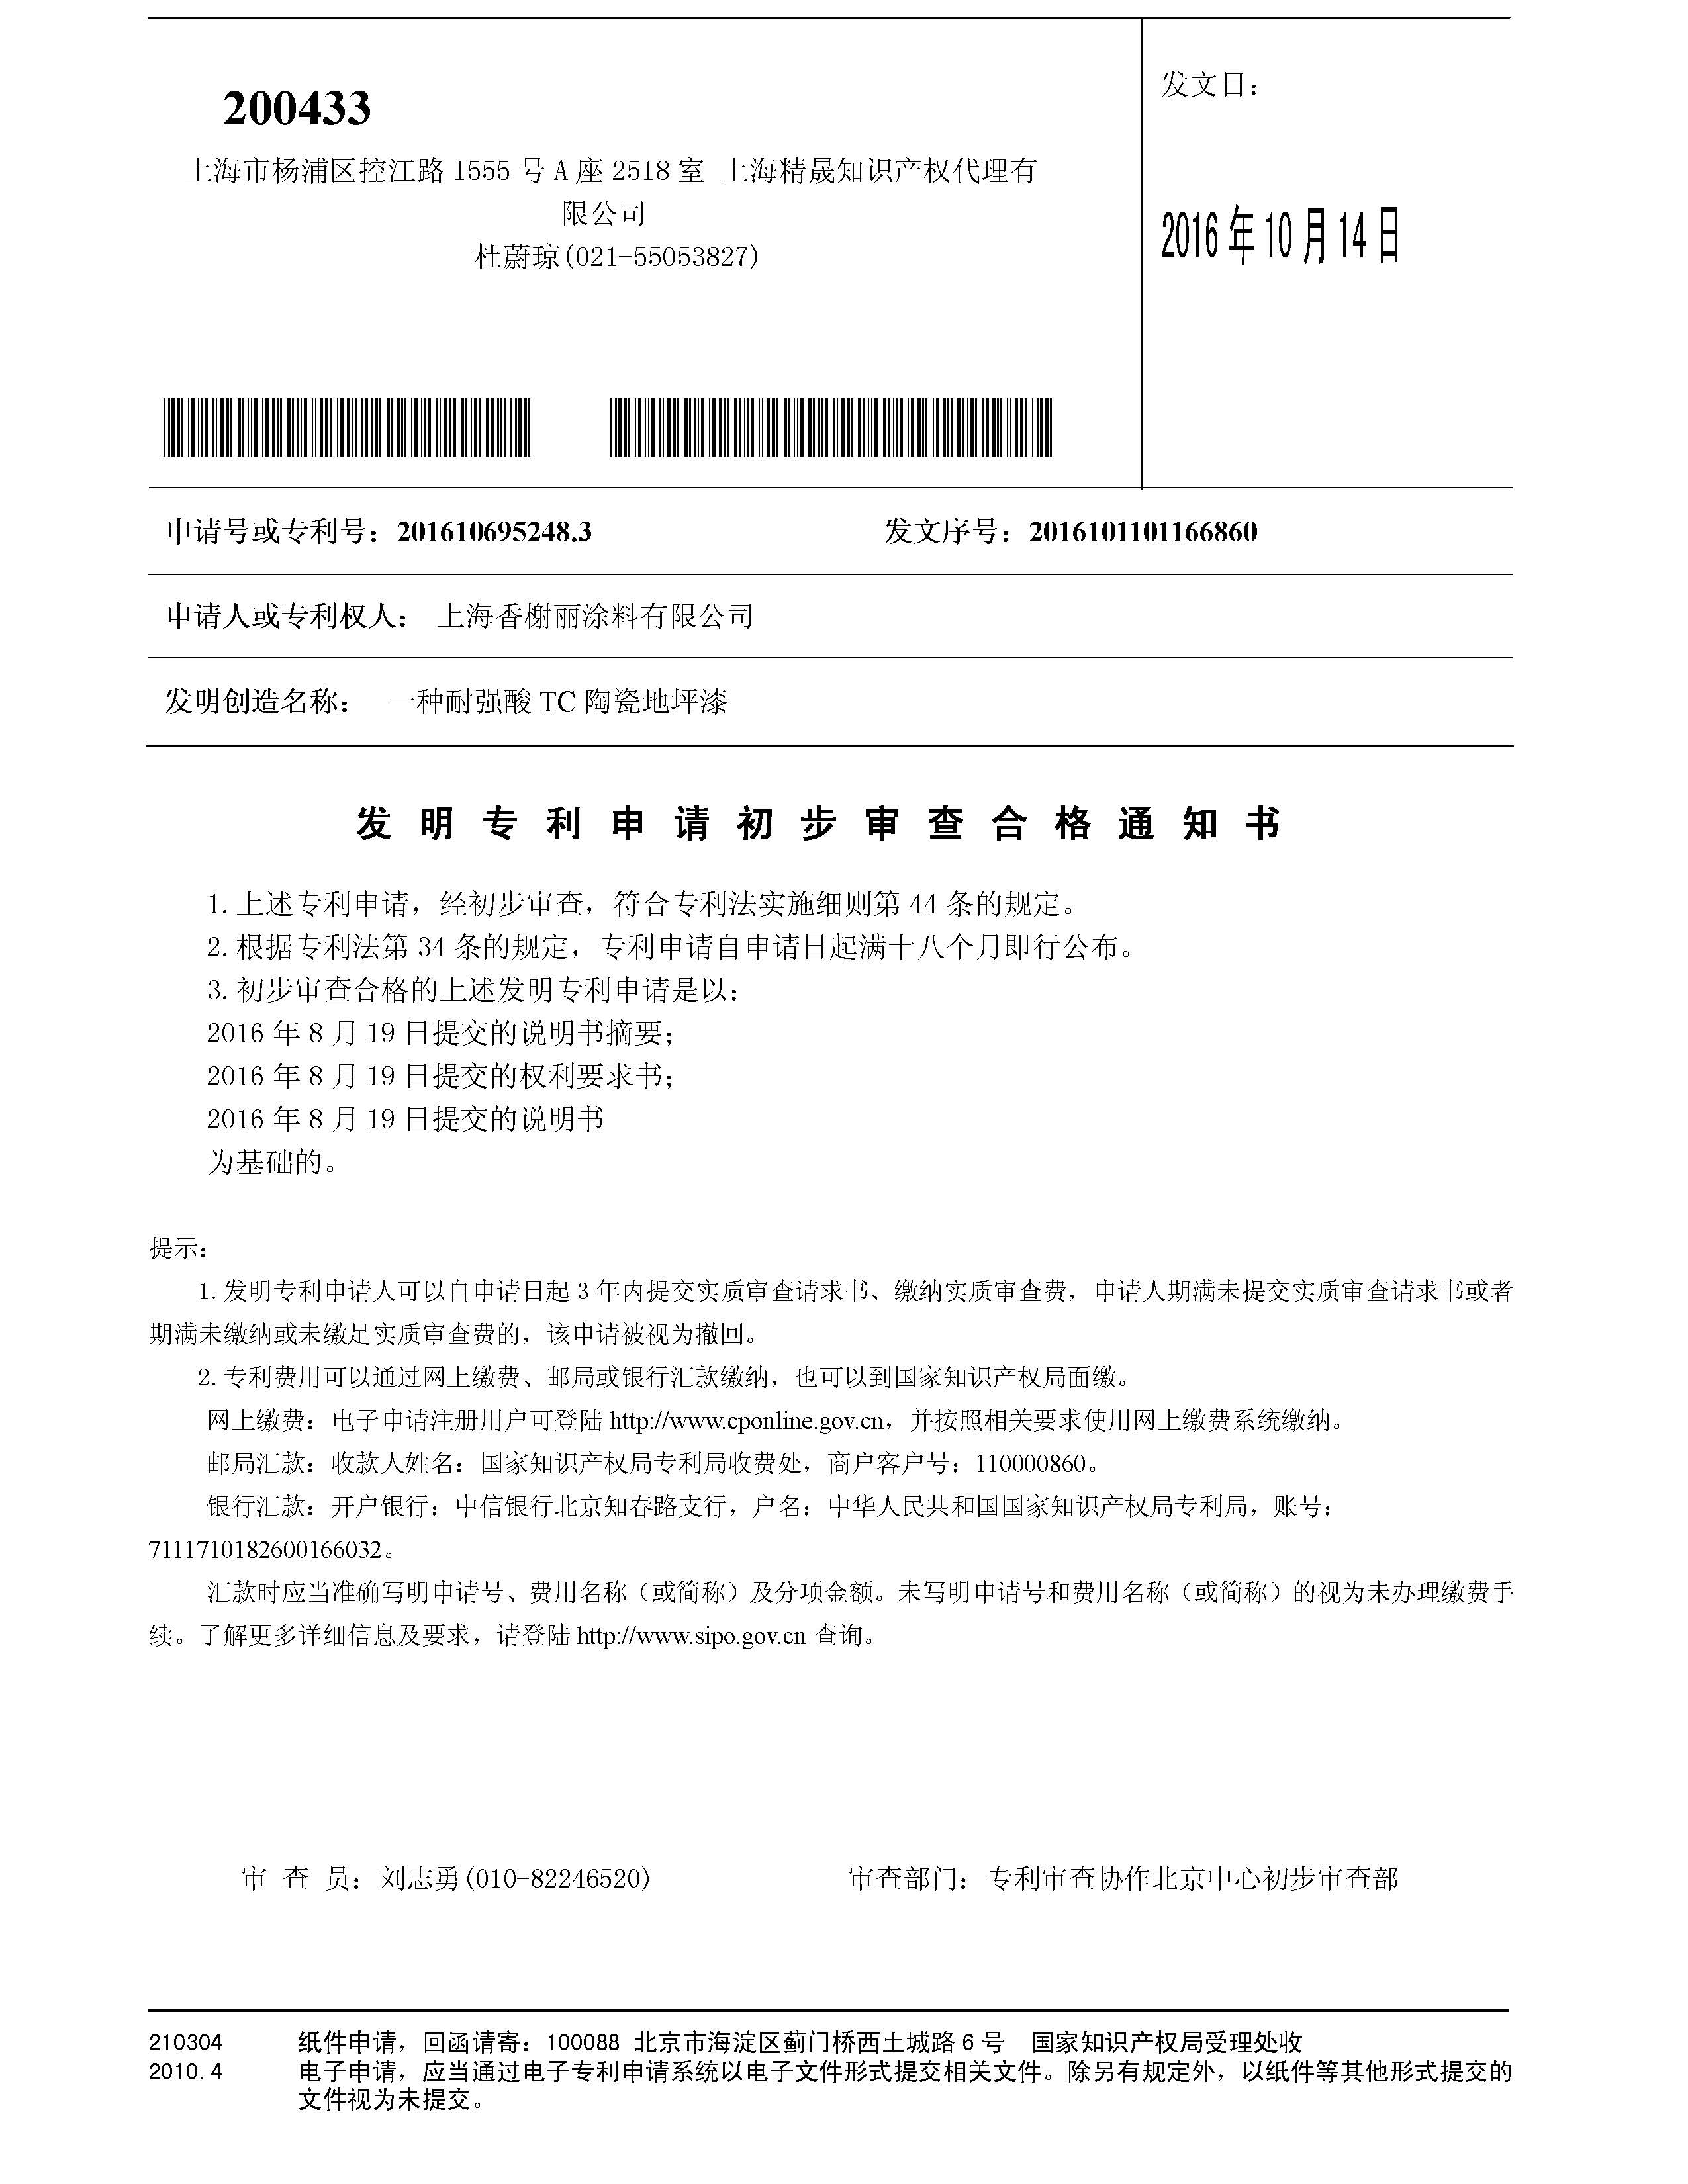 凯时kb88官方网站(中国游)首页